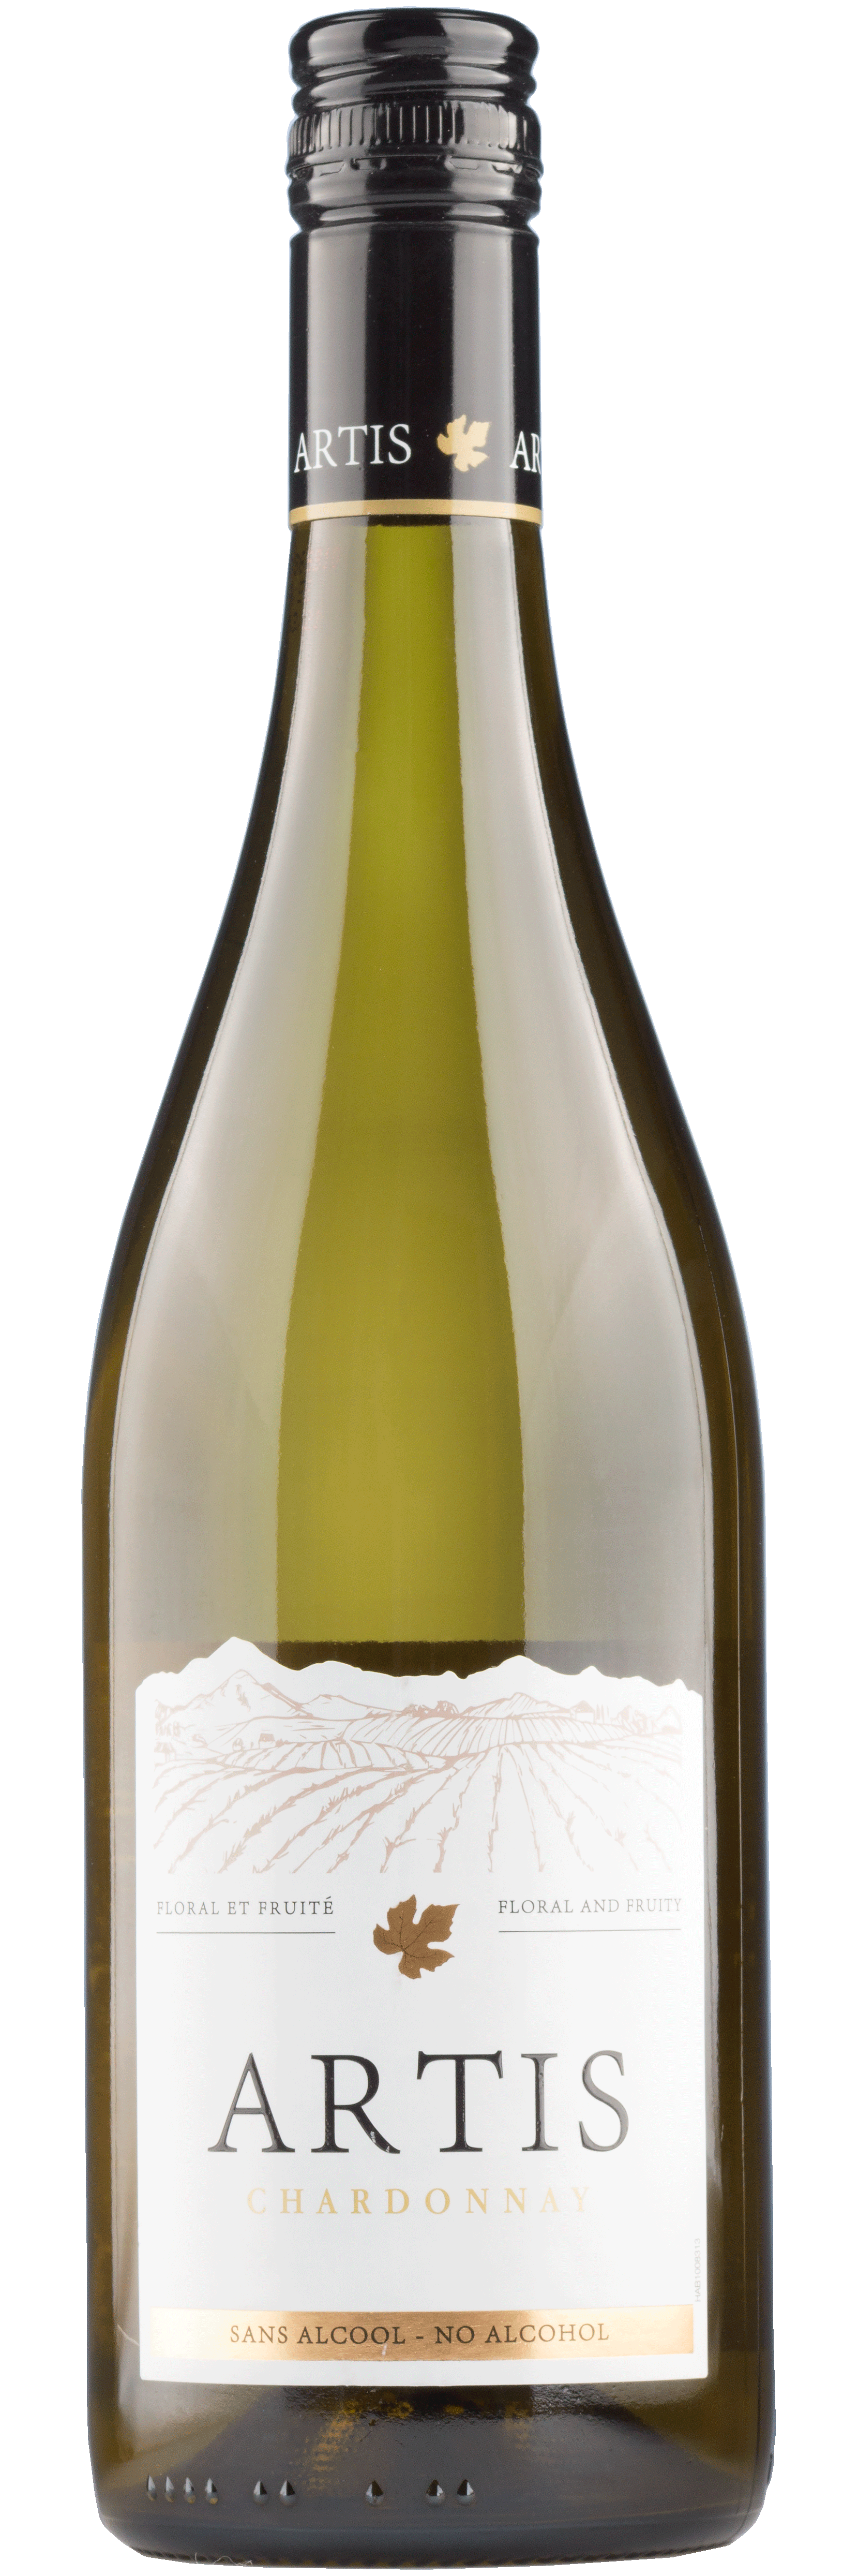 Chardonnay Artis Alkoholfrei - Frankreich - Weißwein trocken - 0,75l - 0,50% vol.